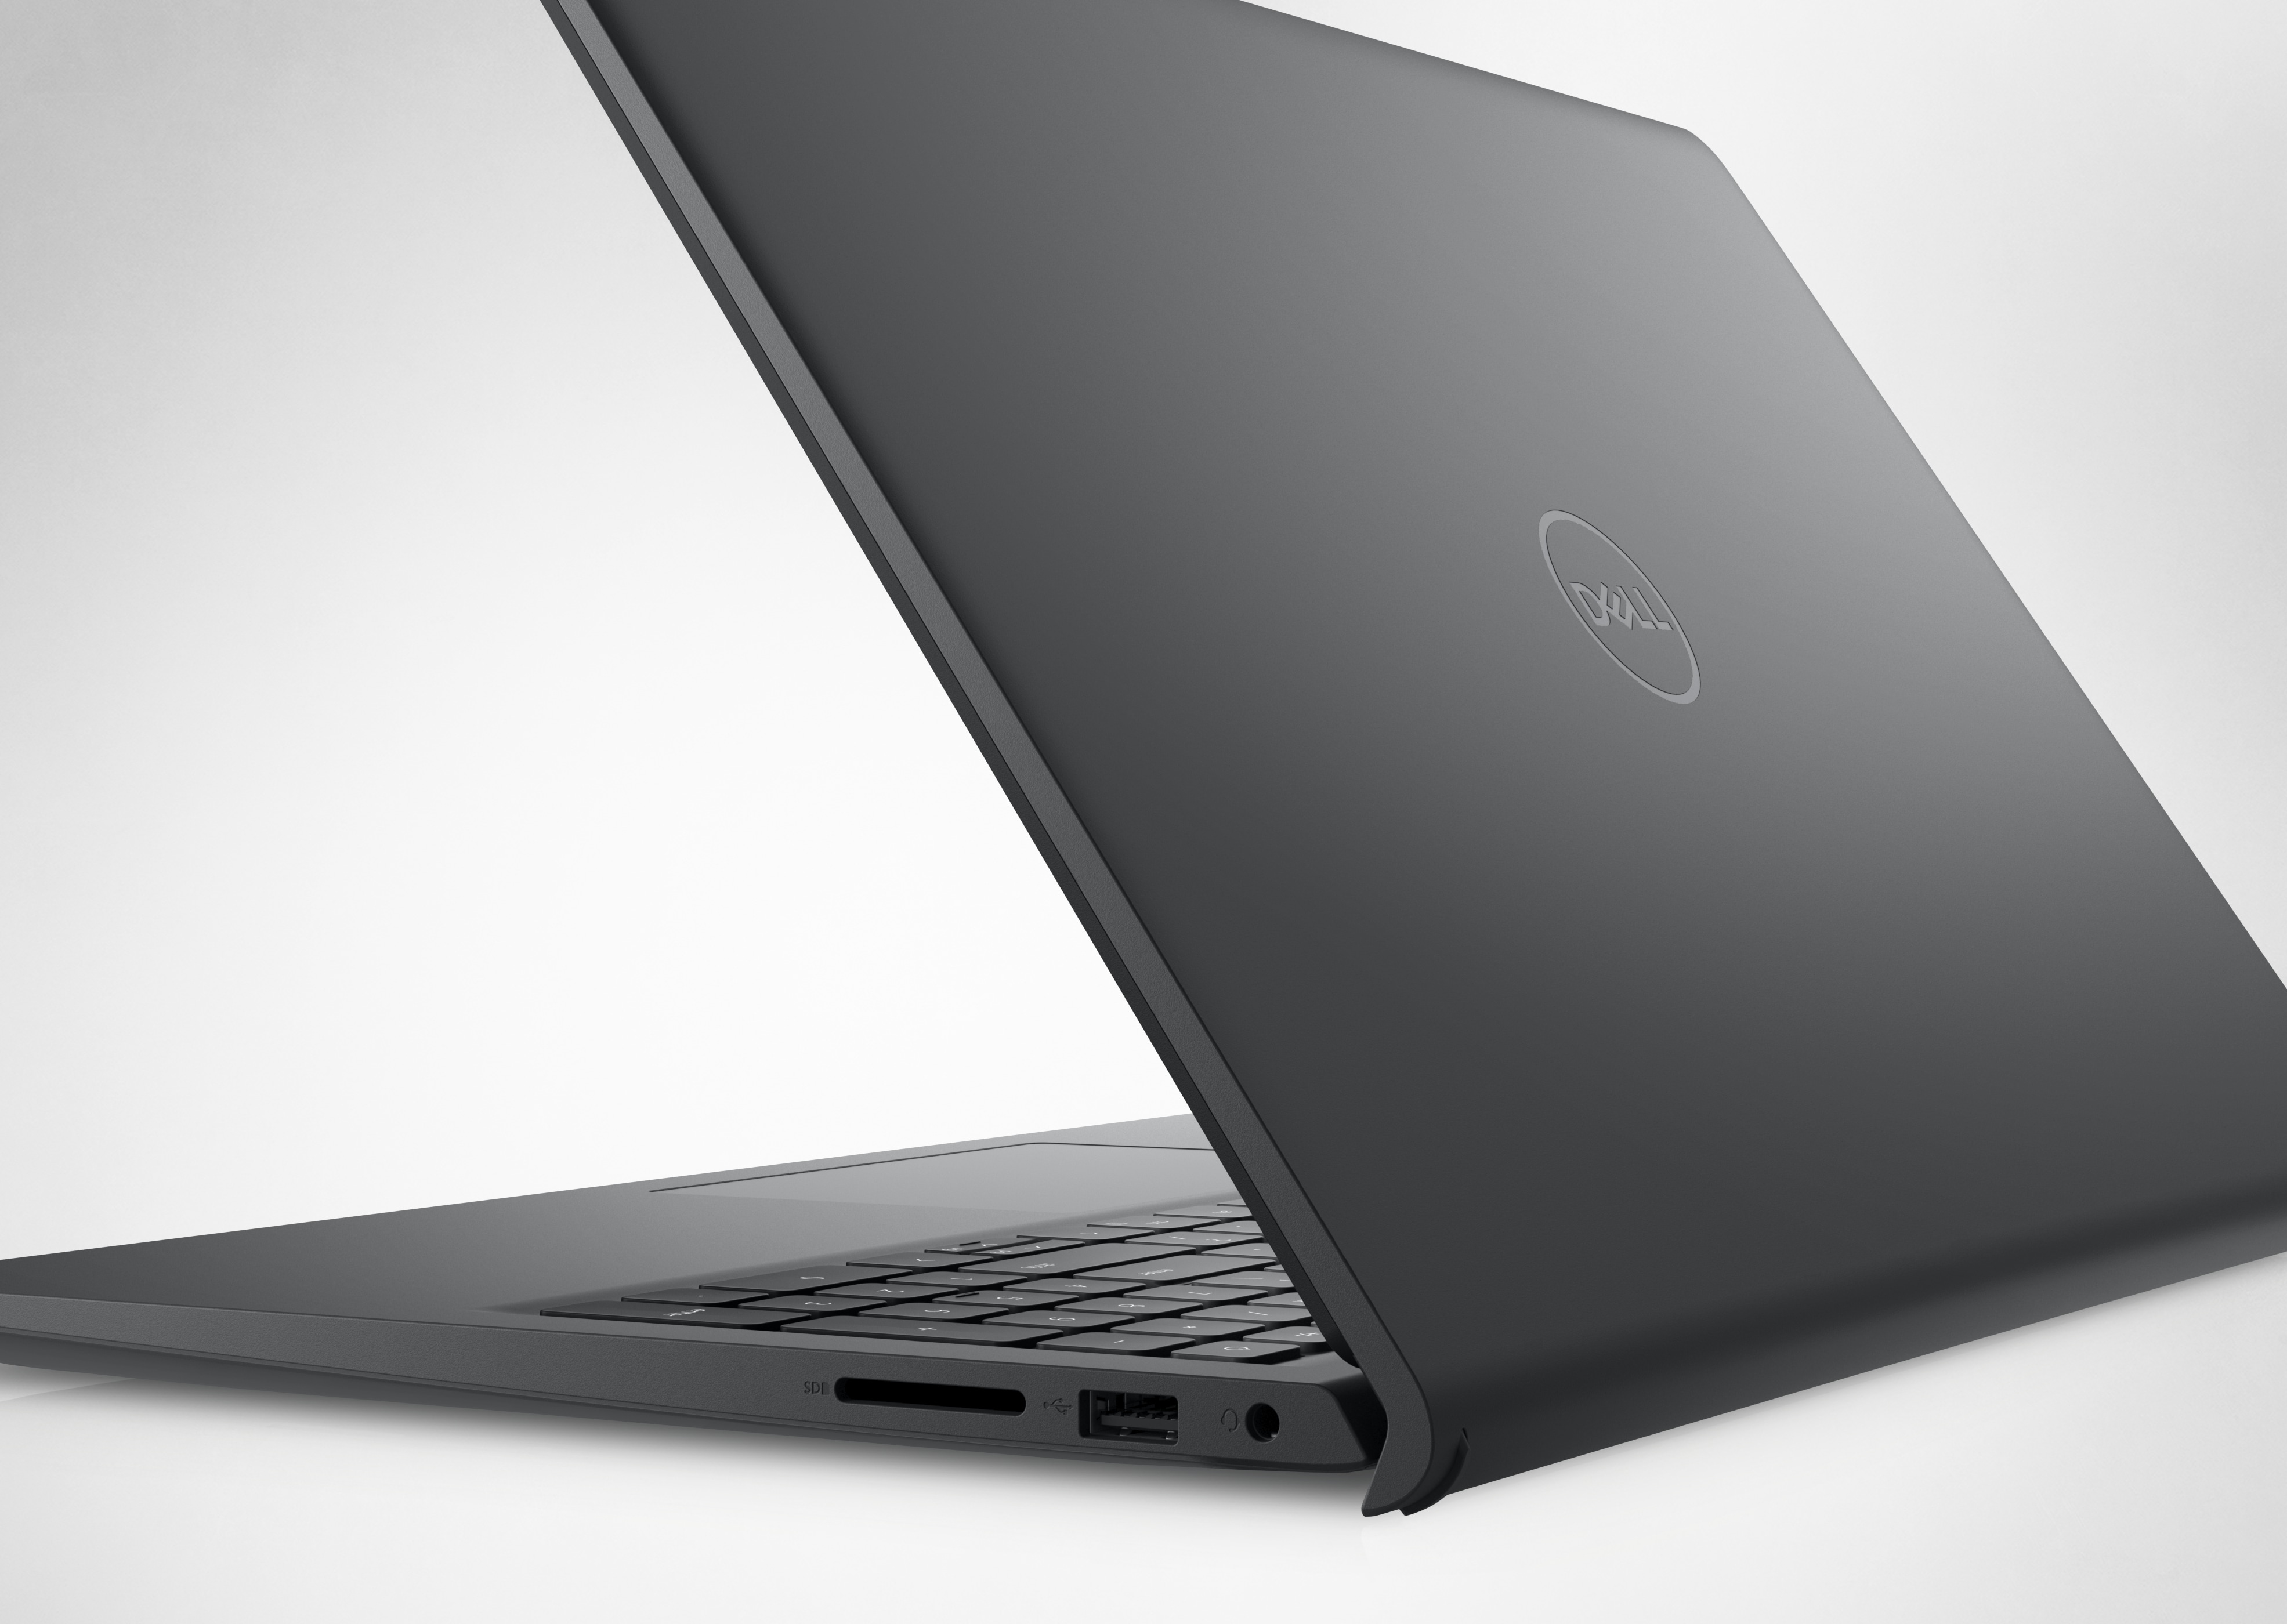 Photo d’un ordinateur portable Dell Inspiron 15 3525 ouvert avec le capot et le logo Dell visibles.